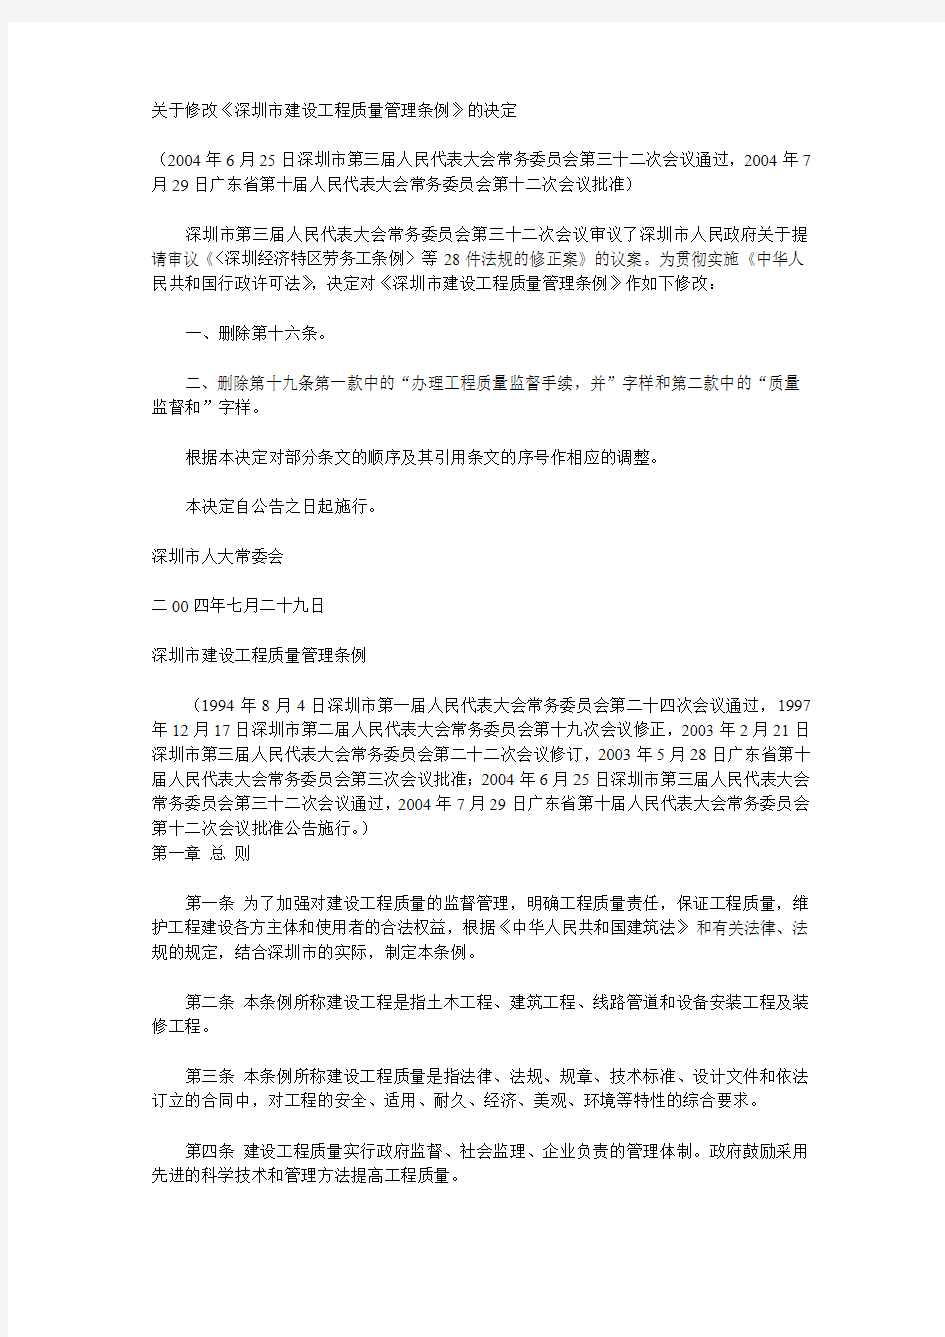 关于修改《深圳市建设工程质量管理条例》的决定